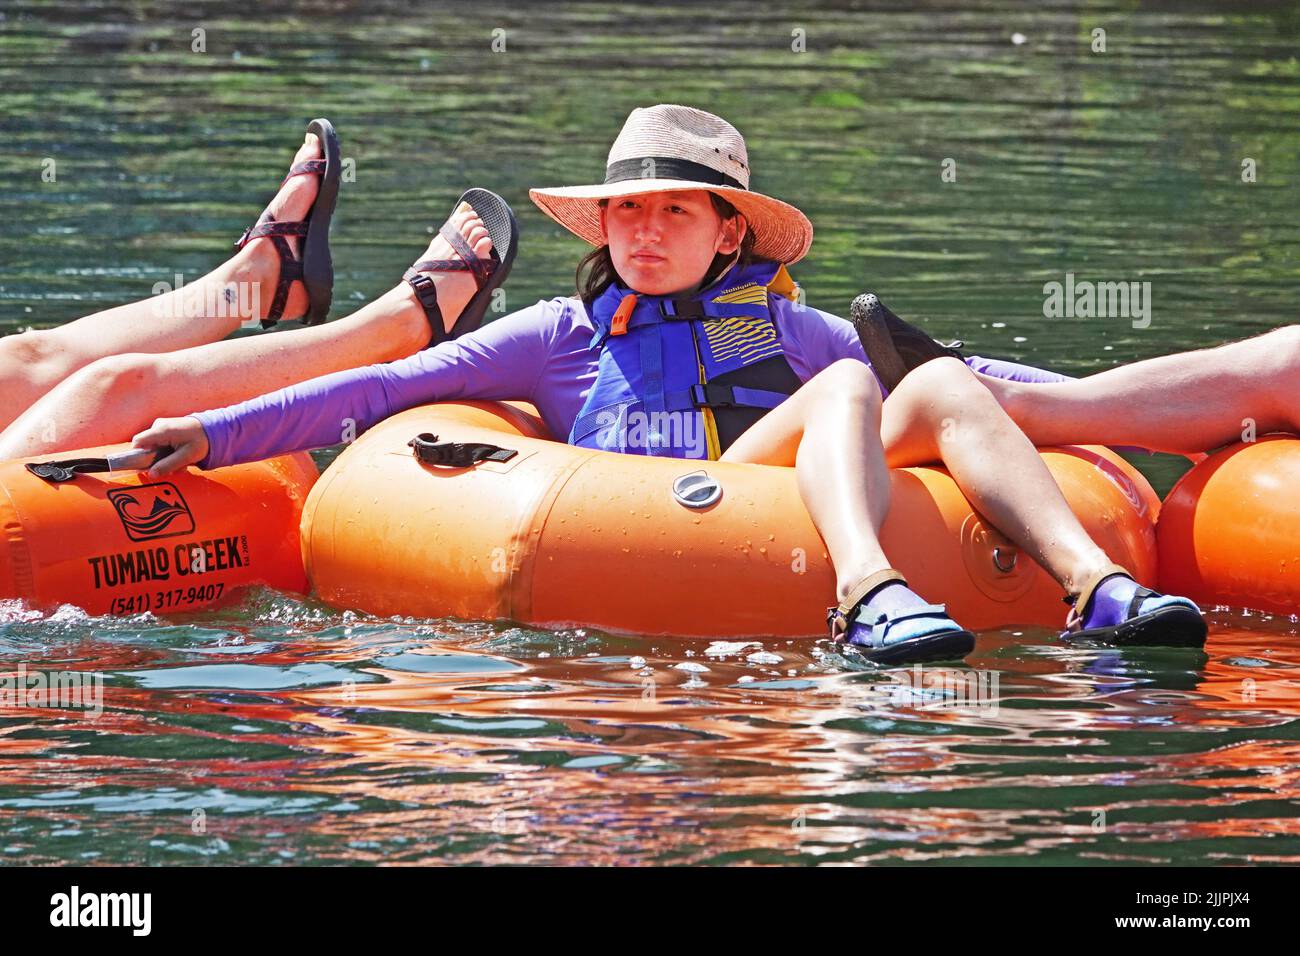 Los jóvenes flotan en el río Deschutes en Bend, Oregon, sobre tubos flotantes de color naranja brillante tratando de escapar de la ola de calor de 100 grados F que está barriendo el noroeste del Pacífico. Foto de stock